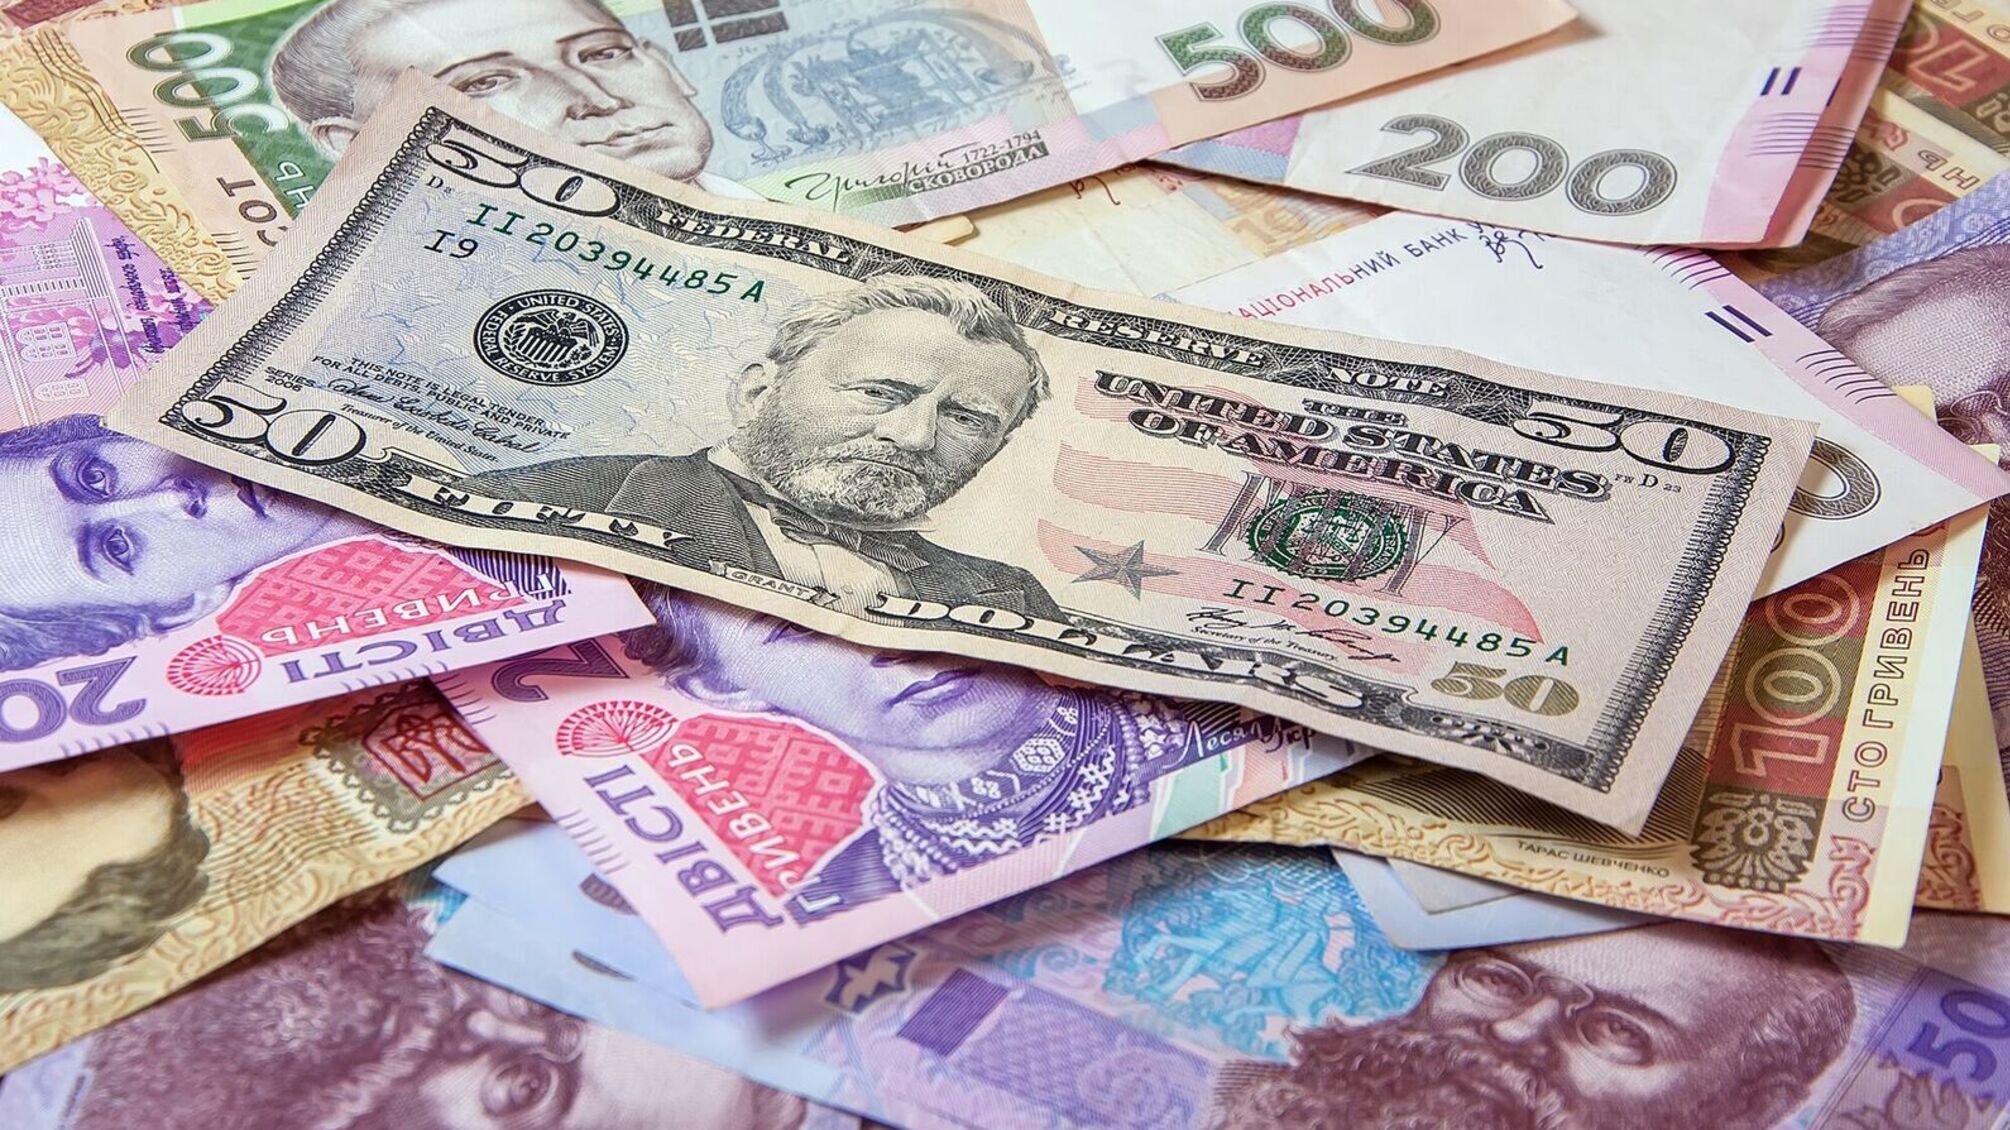 Екс-керівника банку судитимуть за привласнення 52 млн гривень